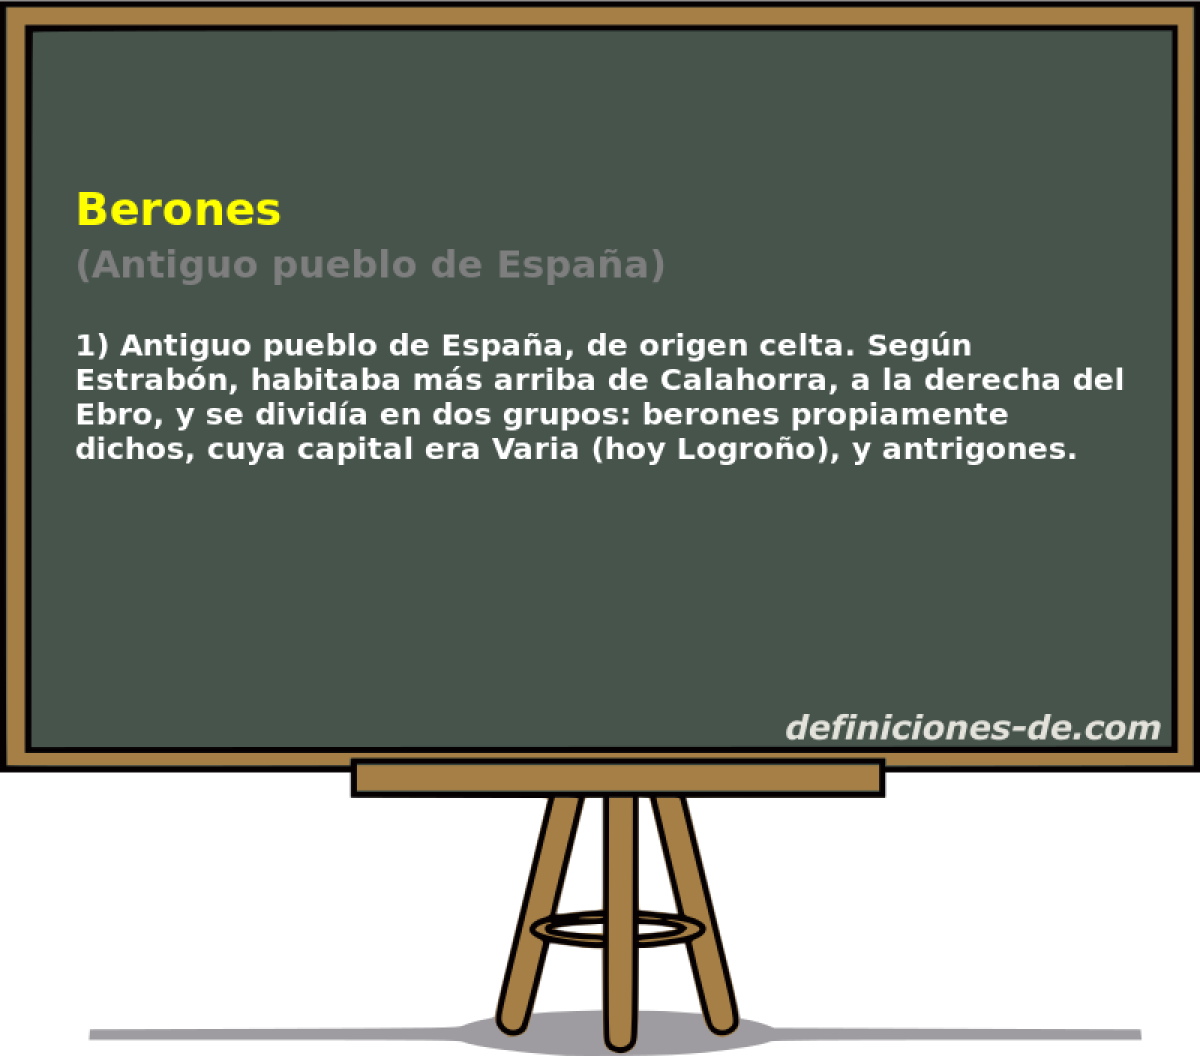 Berones (Antiguo pueblo de Espaa)